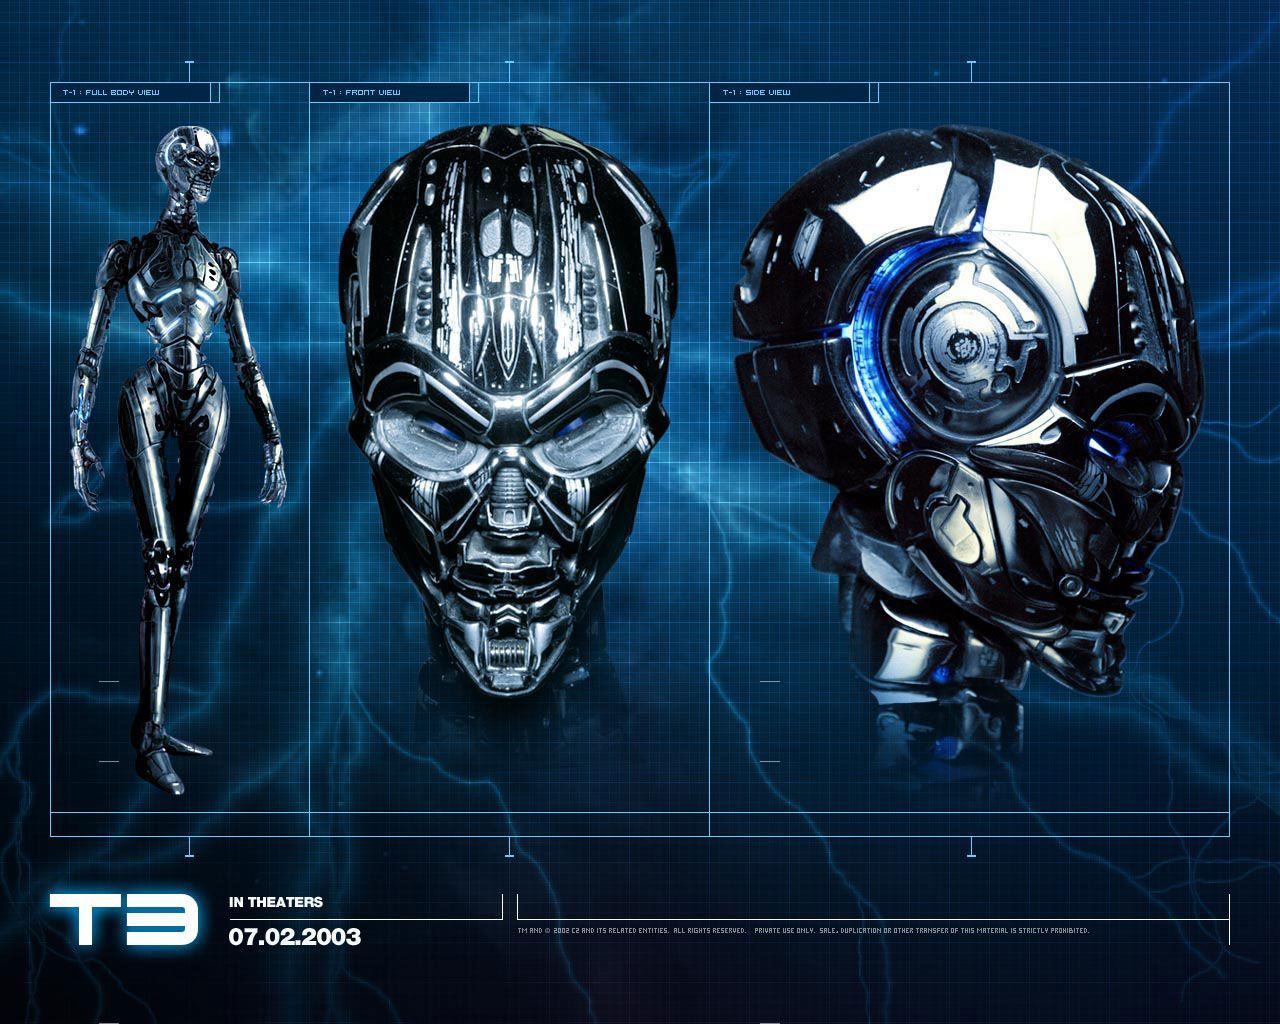 Terminator 3 Wallpaper | 1280x1024 | ID:3118